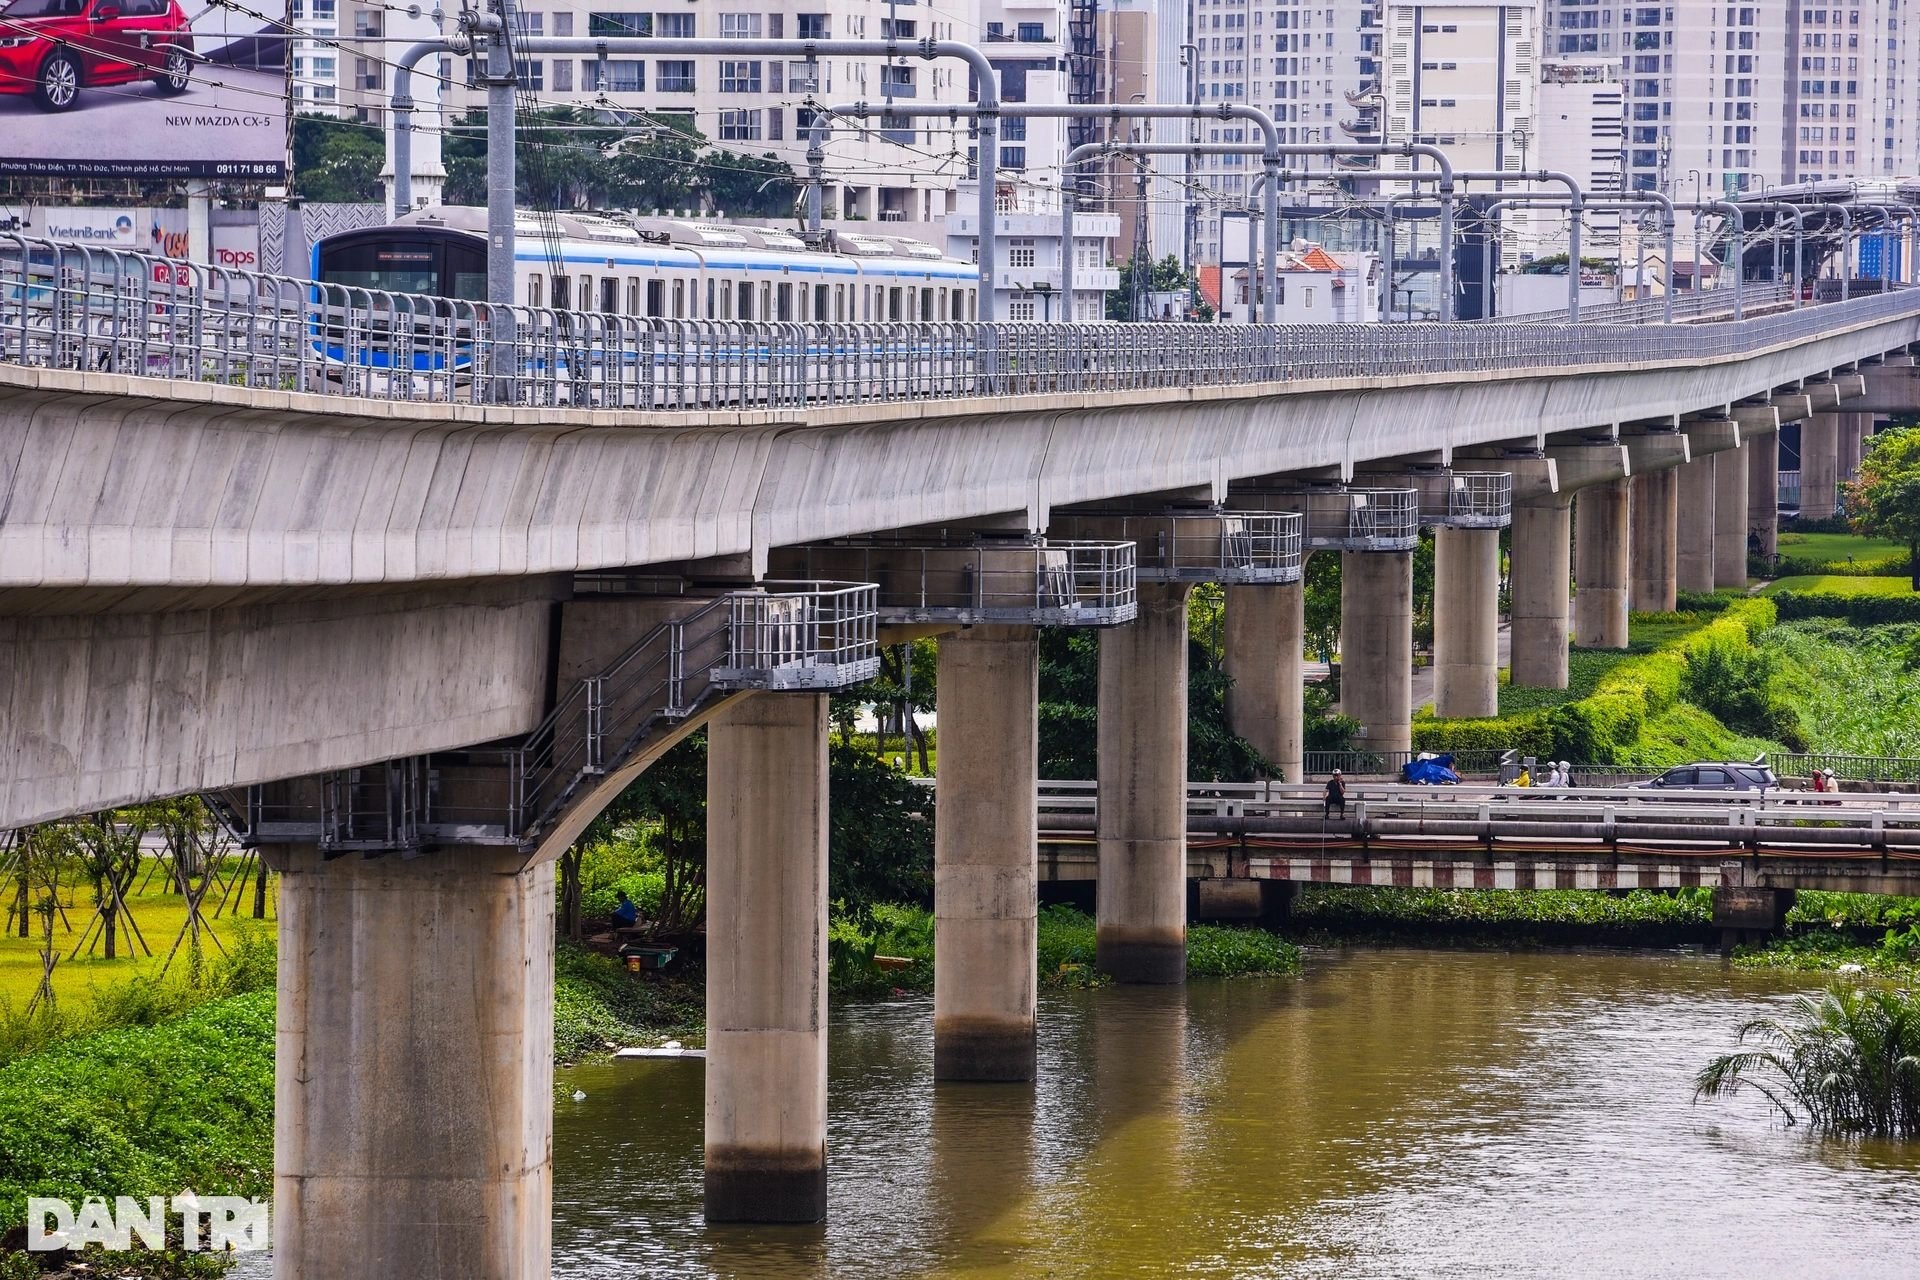 View - 11 năm hoàn thành mạng lưới metro TPHCM có viển vông? | Báo Dân trí